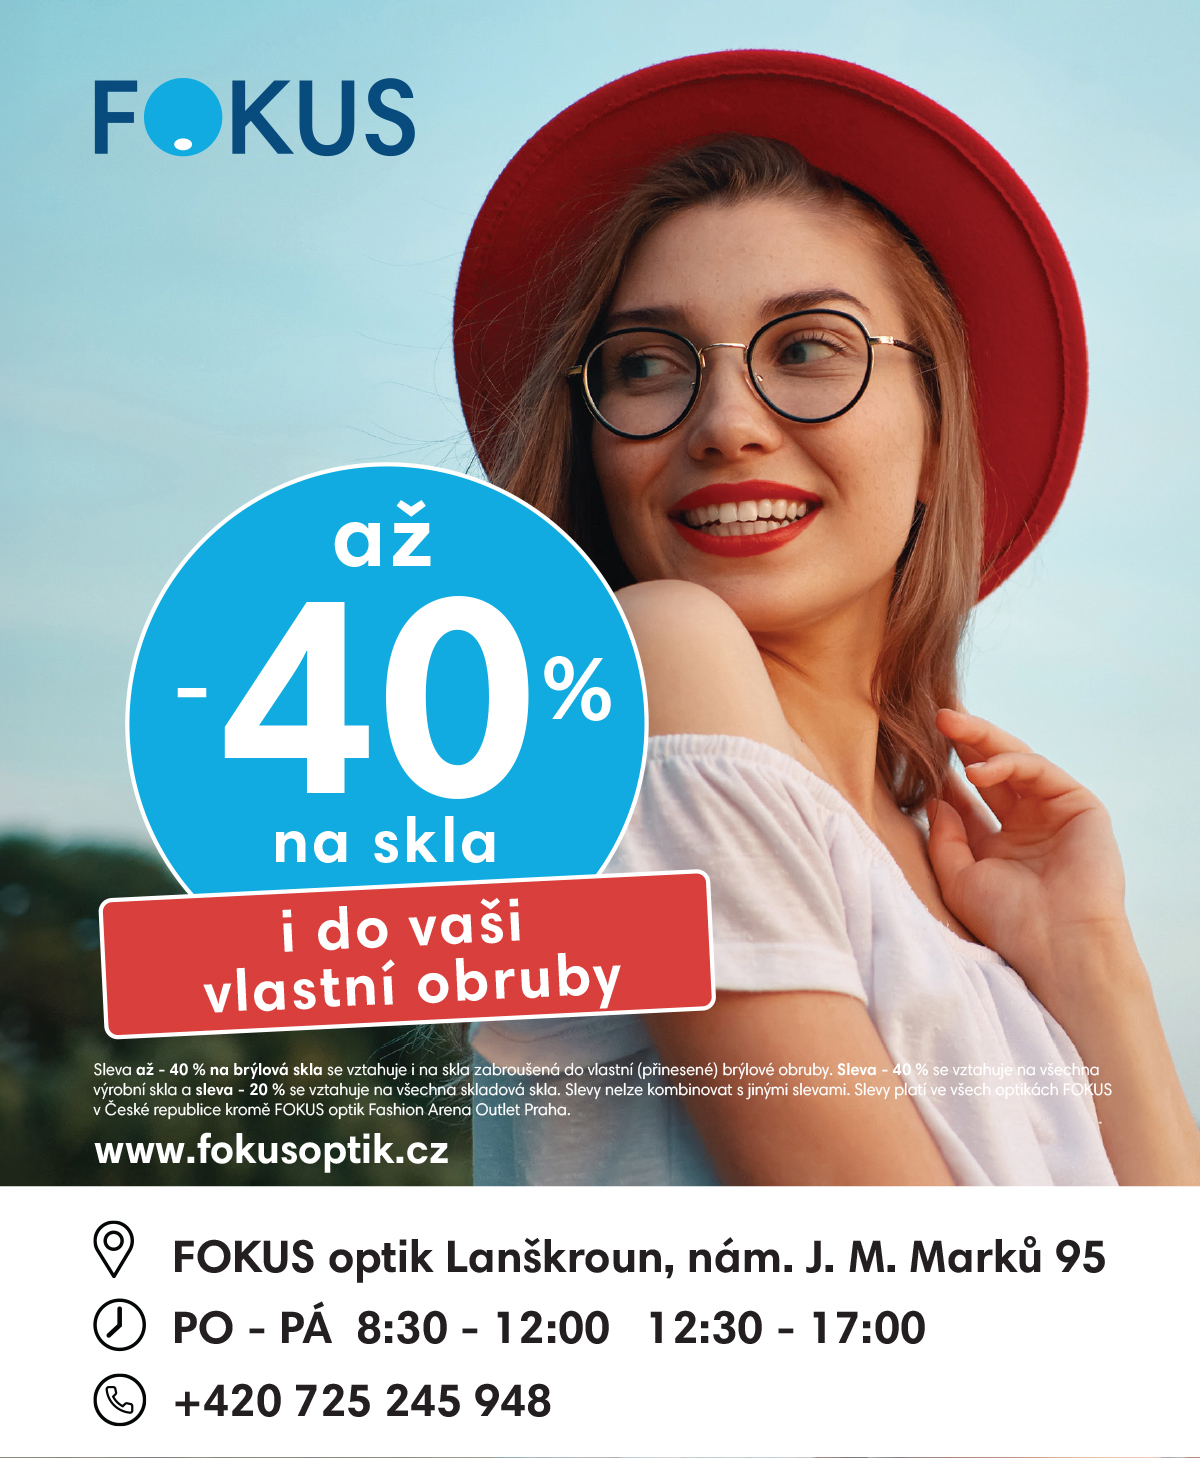 Více o našich akcích na www.fokusoptik.cz/akce